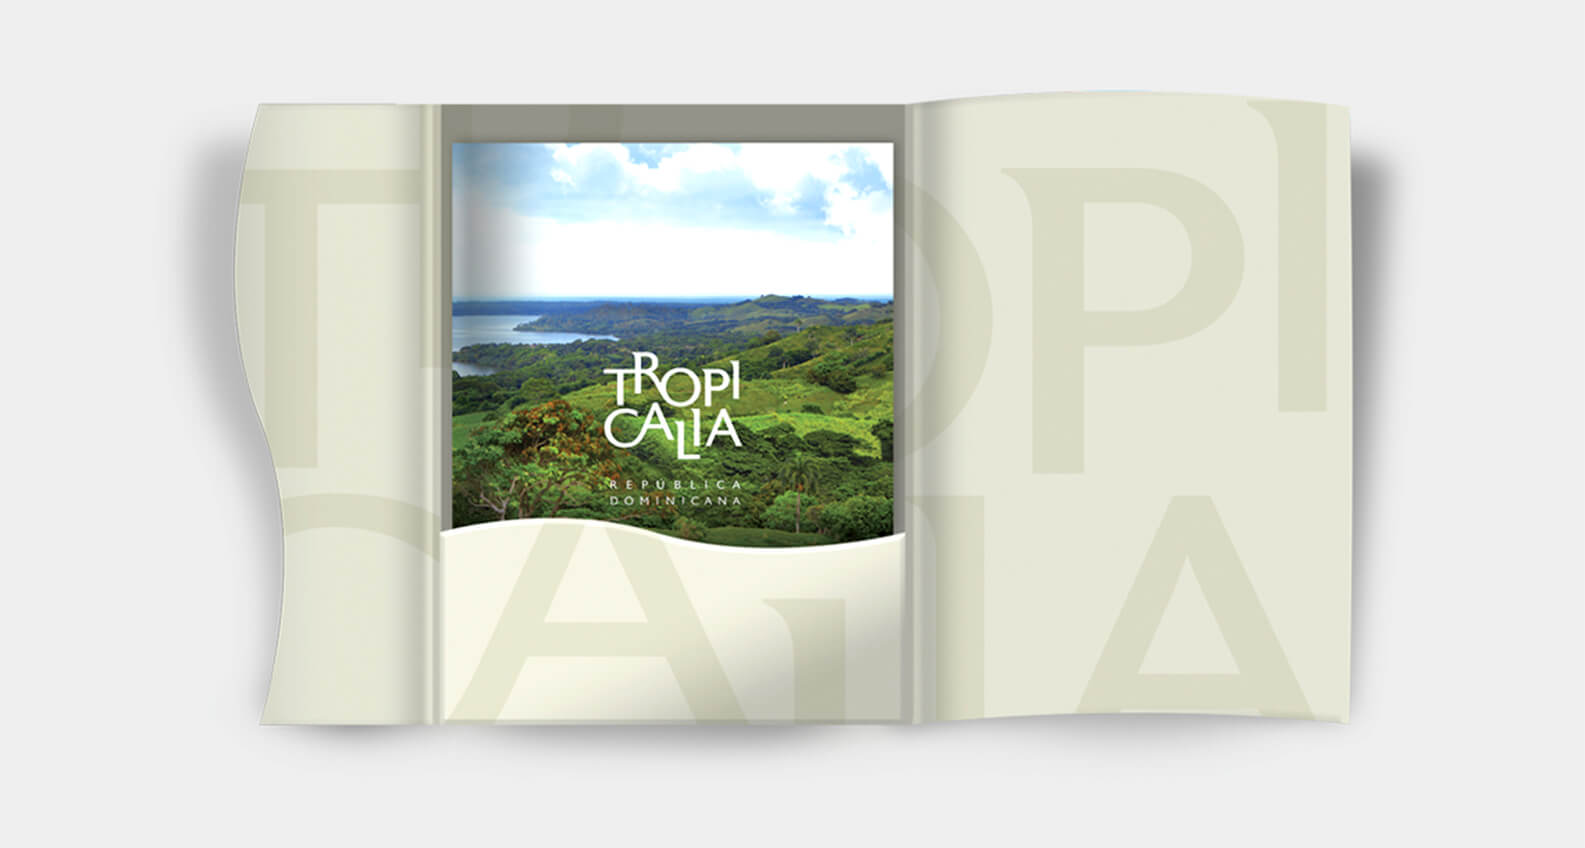 Tropicalia book design by Jacober Creative